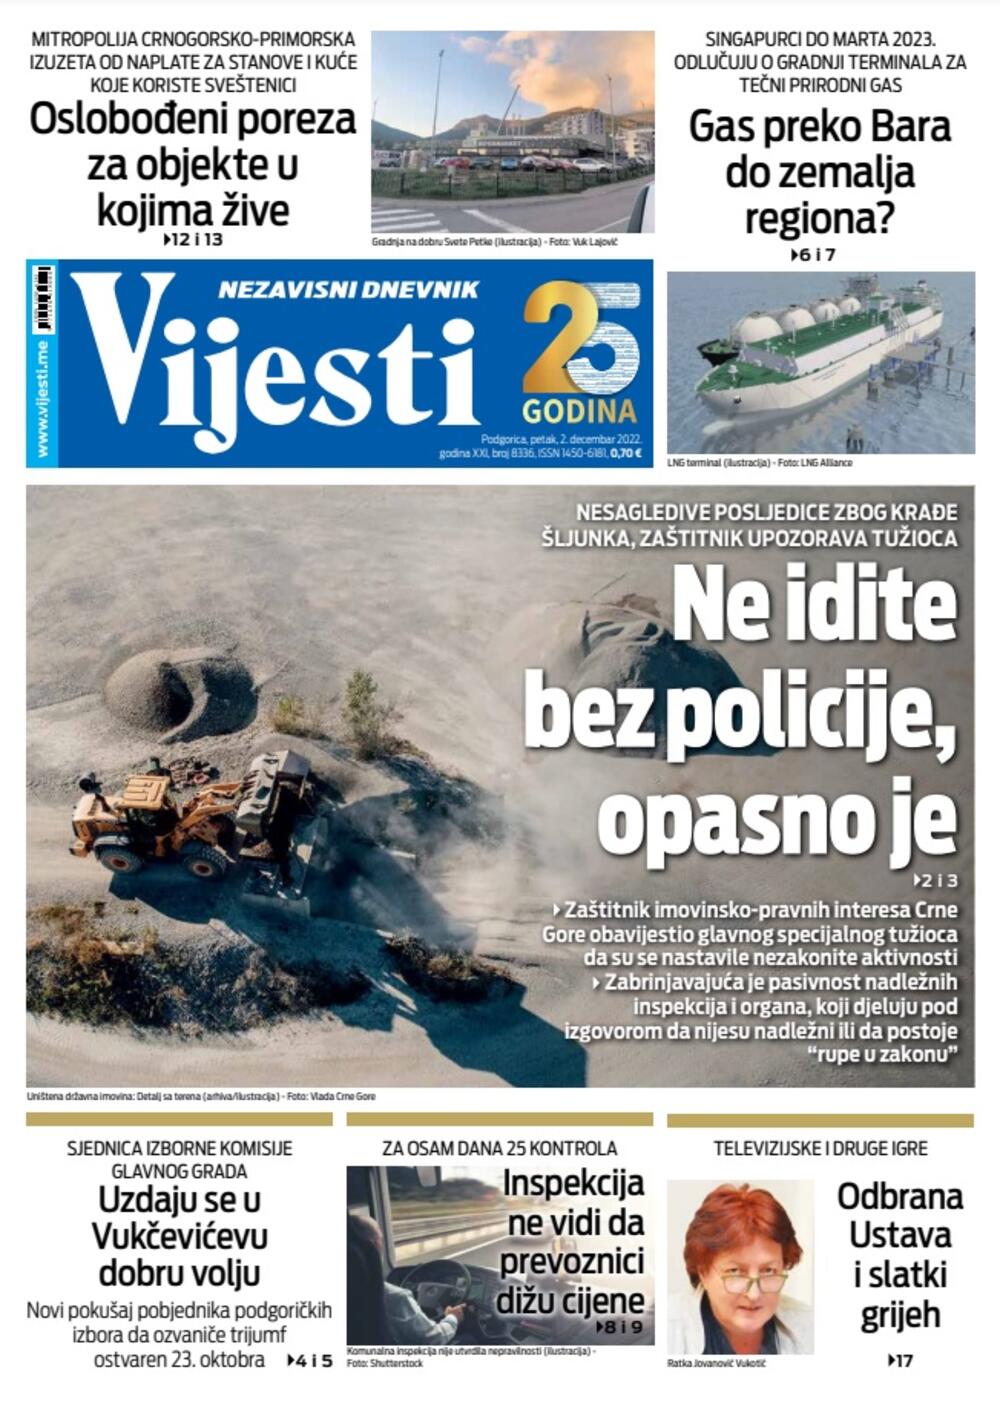 Naslovna strana "Vijesti" za 2. decembar 2022., Foto: Vijesti